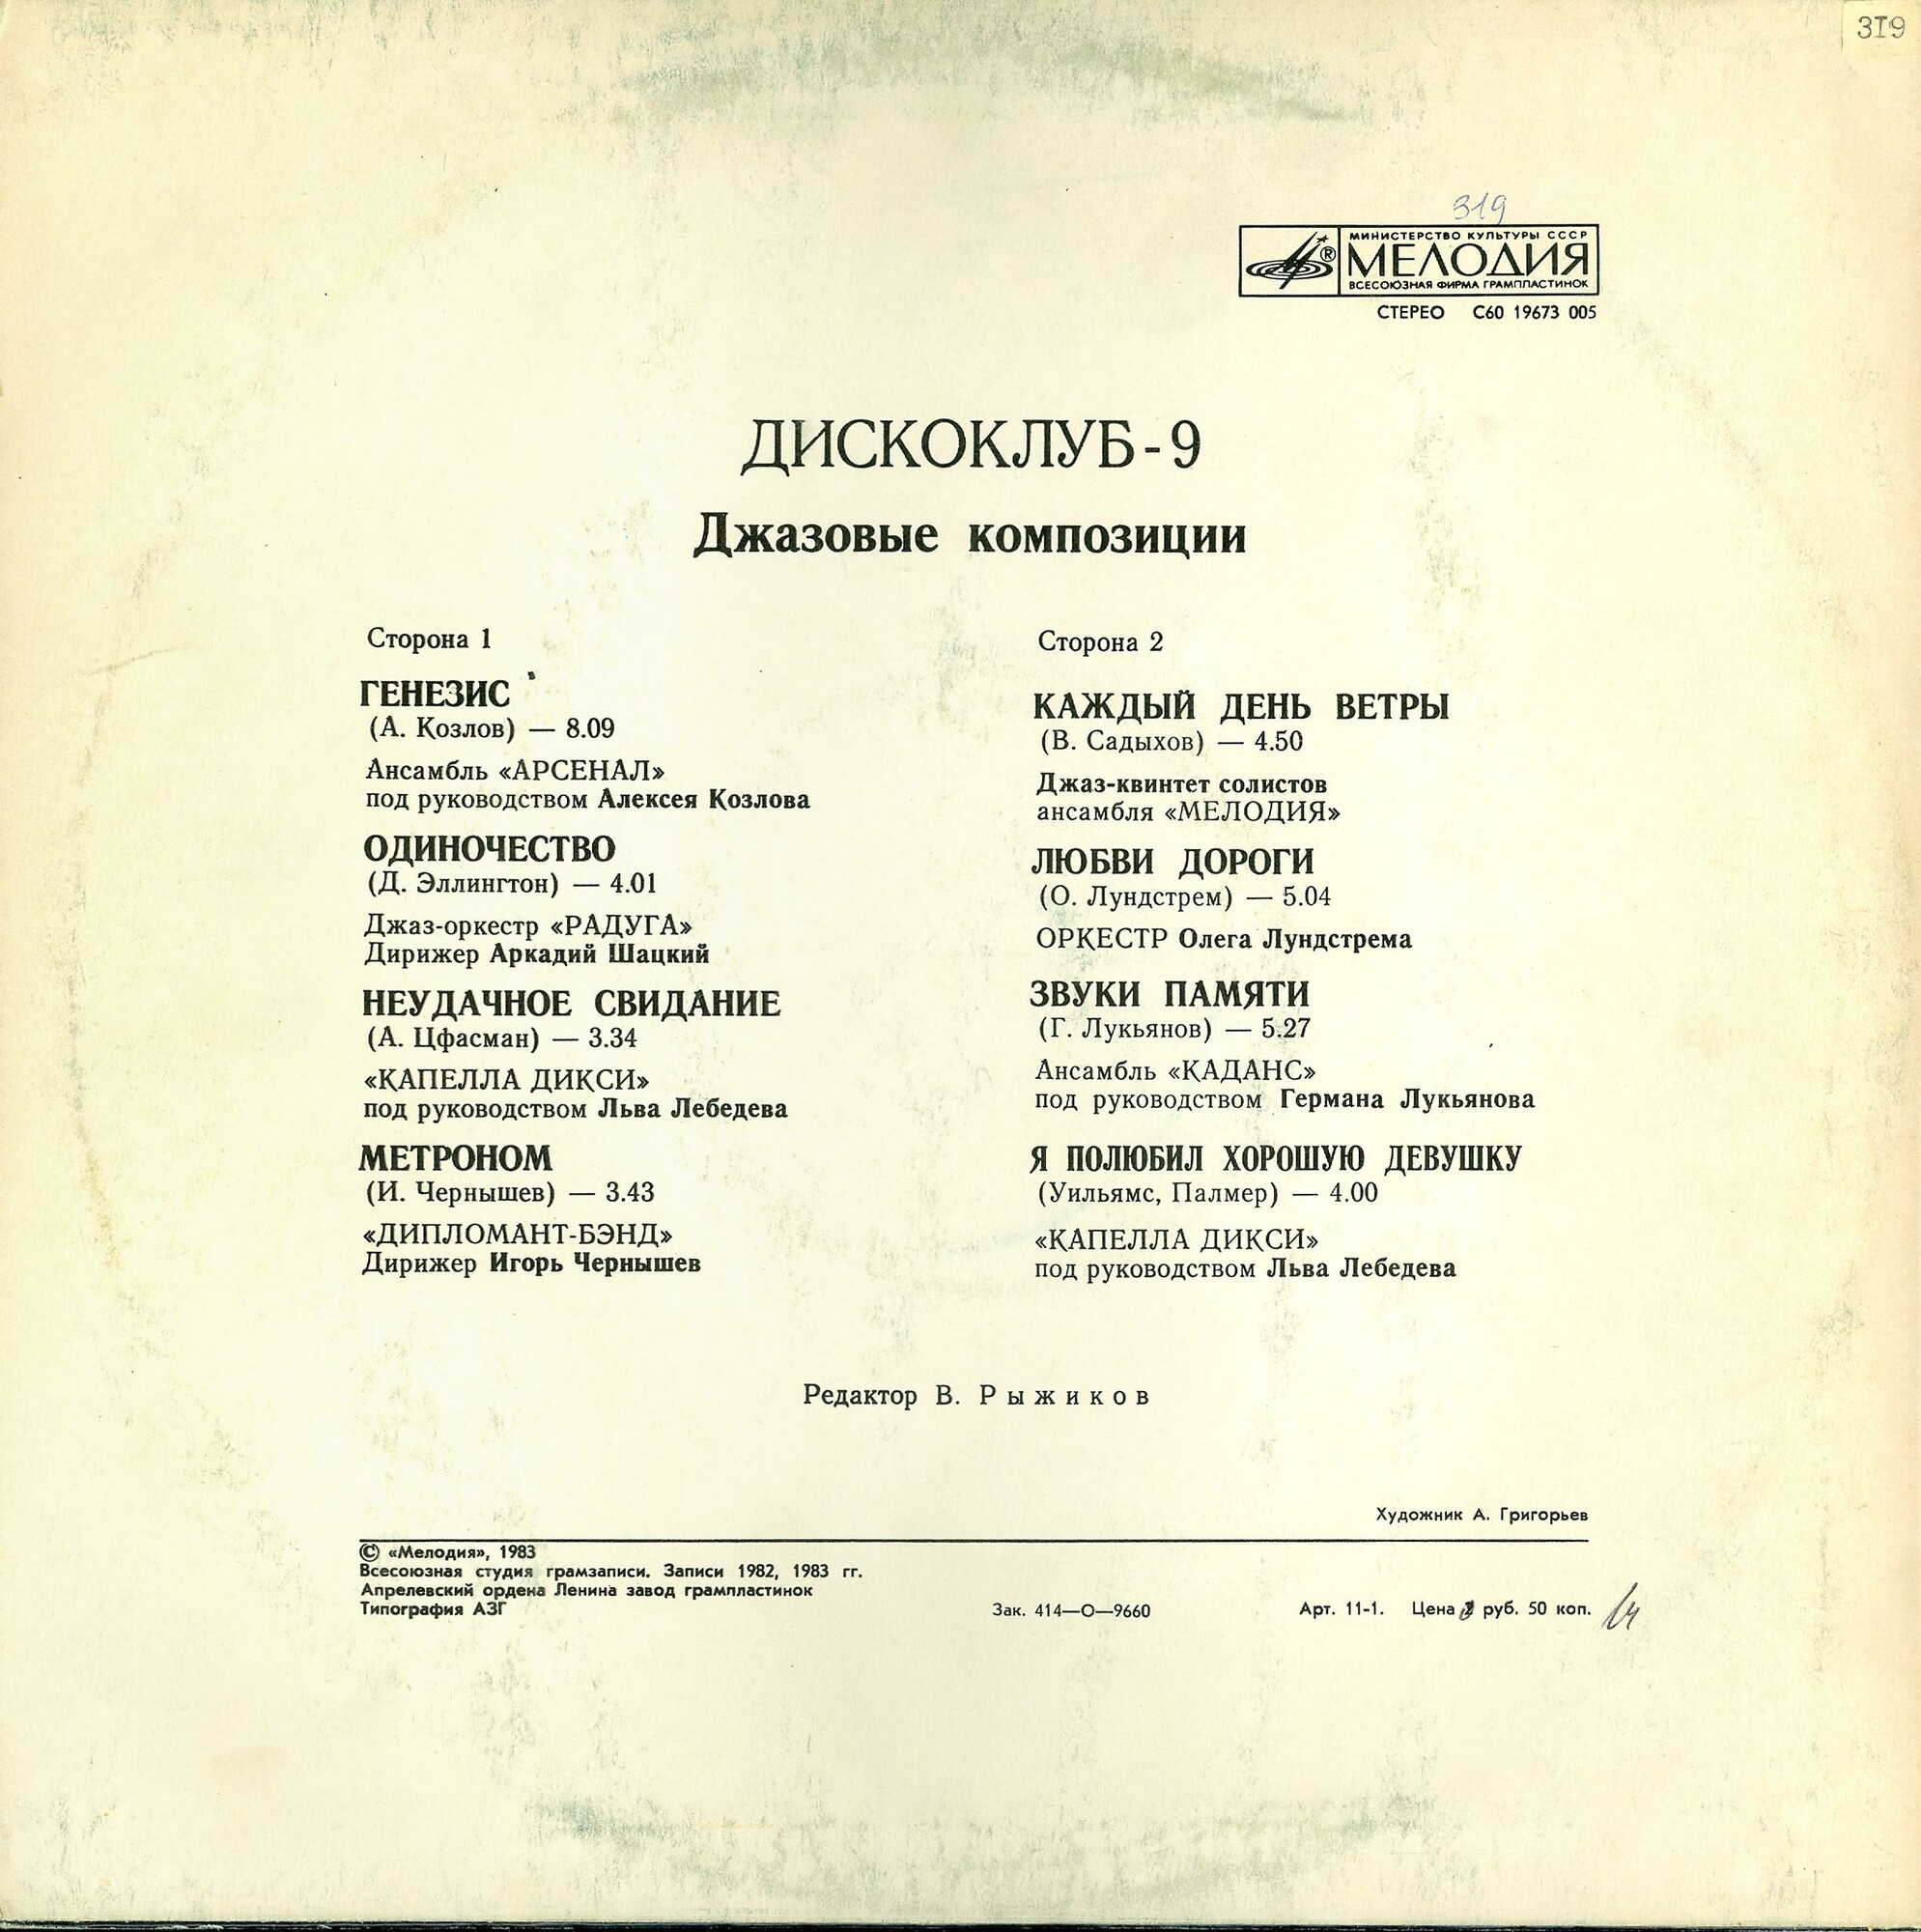 ДИСКОКЛУБ-9 (Б) - Джазовые композиции